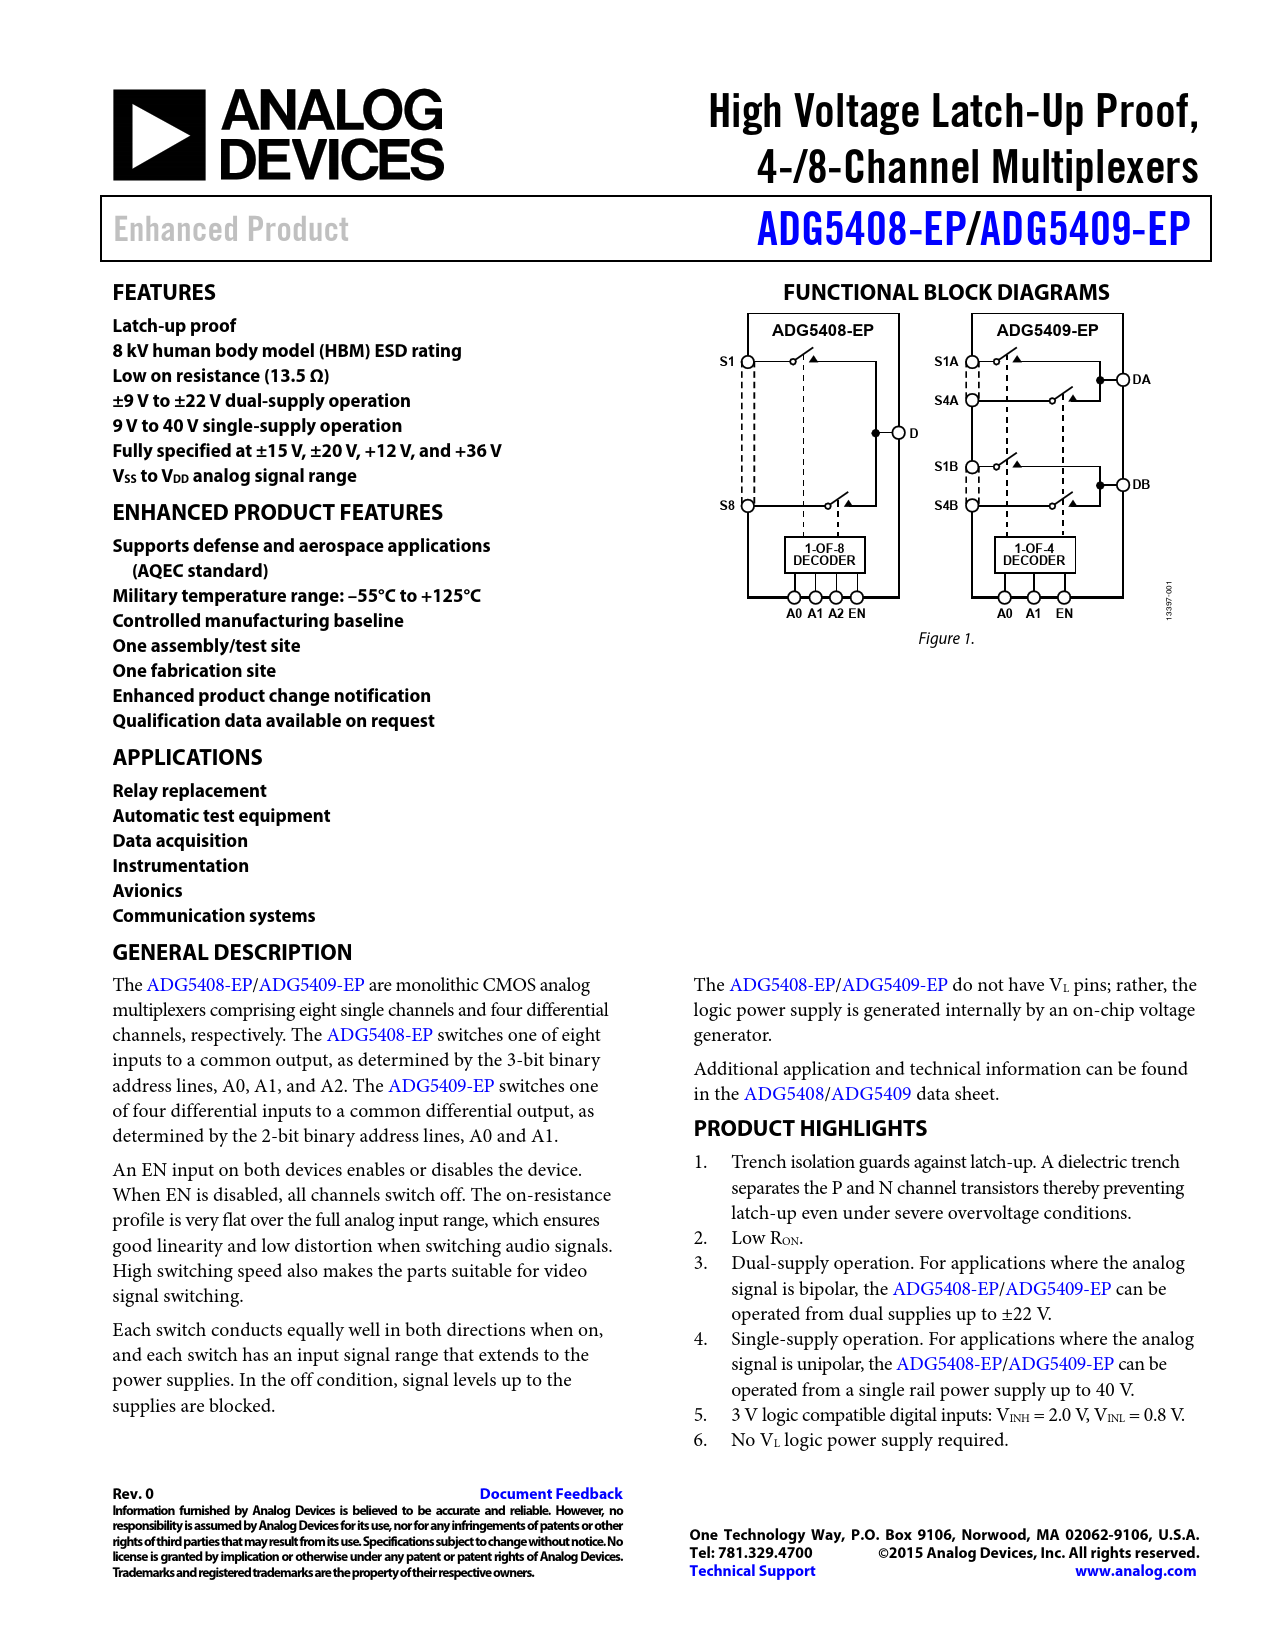 Datasheet ADG5408-EP, ADG5409-EP Analog Devices